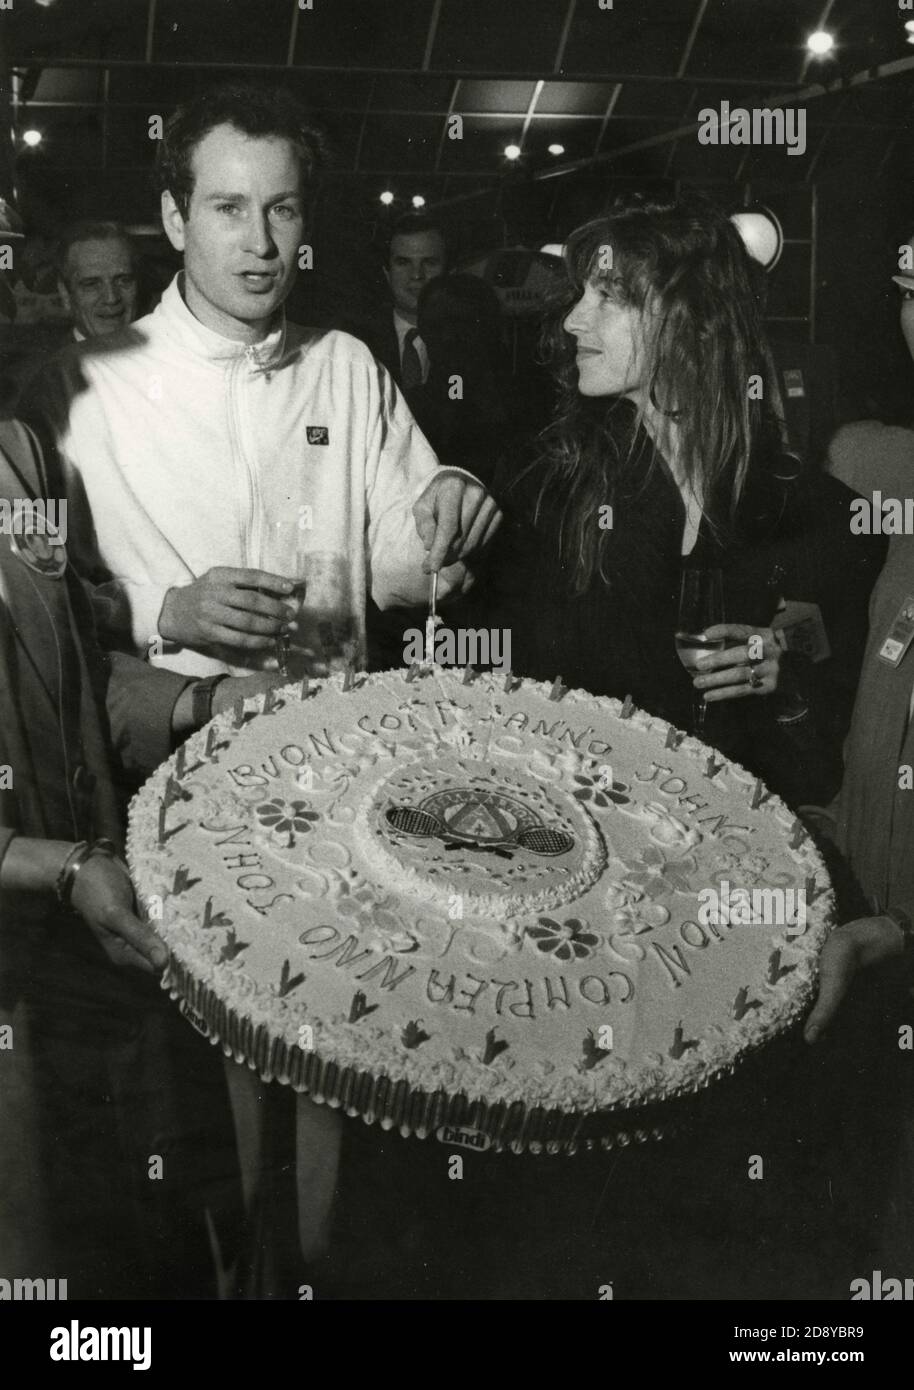 El tenista estadounidense John McEnroe y la esposa Tatum o'Neal con su pastel de cumpleaños, 1980 Foto de stock